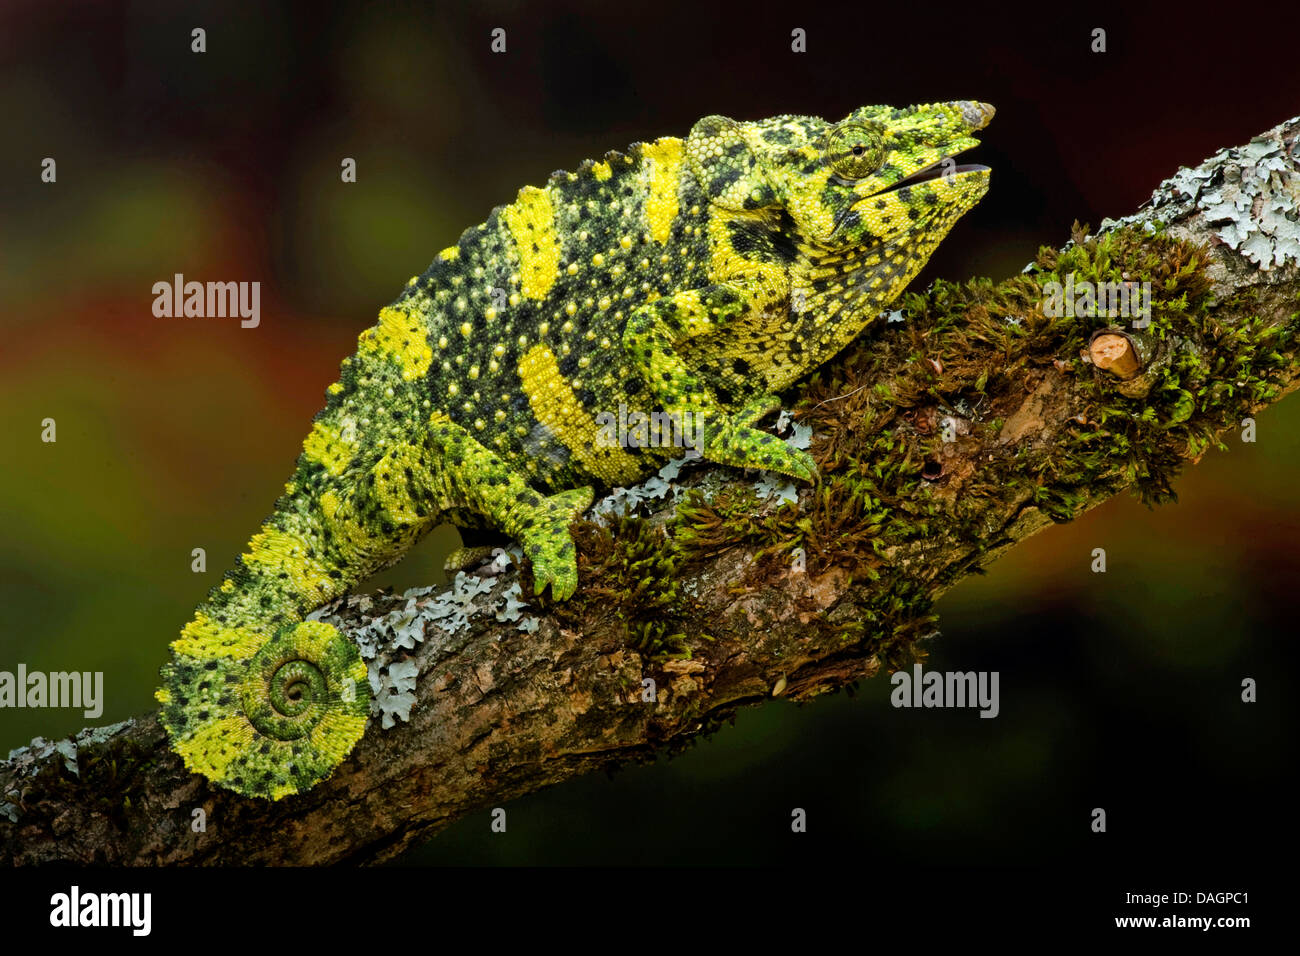 Meller's chameleon (Chamaeleo melleri), on branch Stock Photo